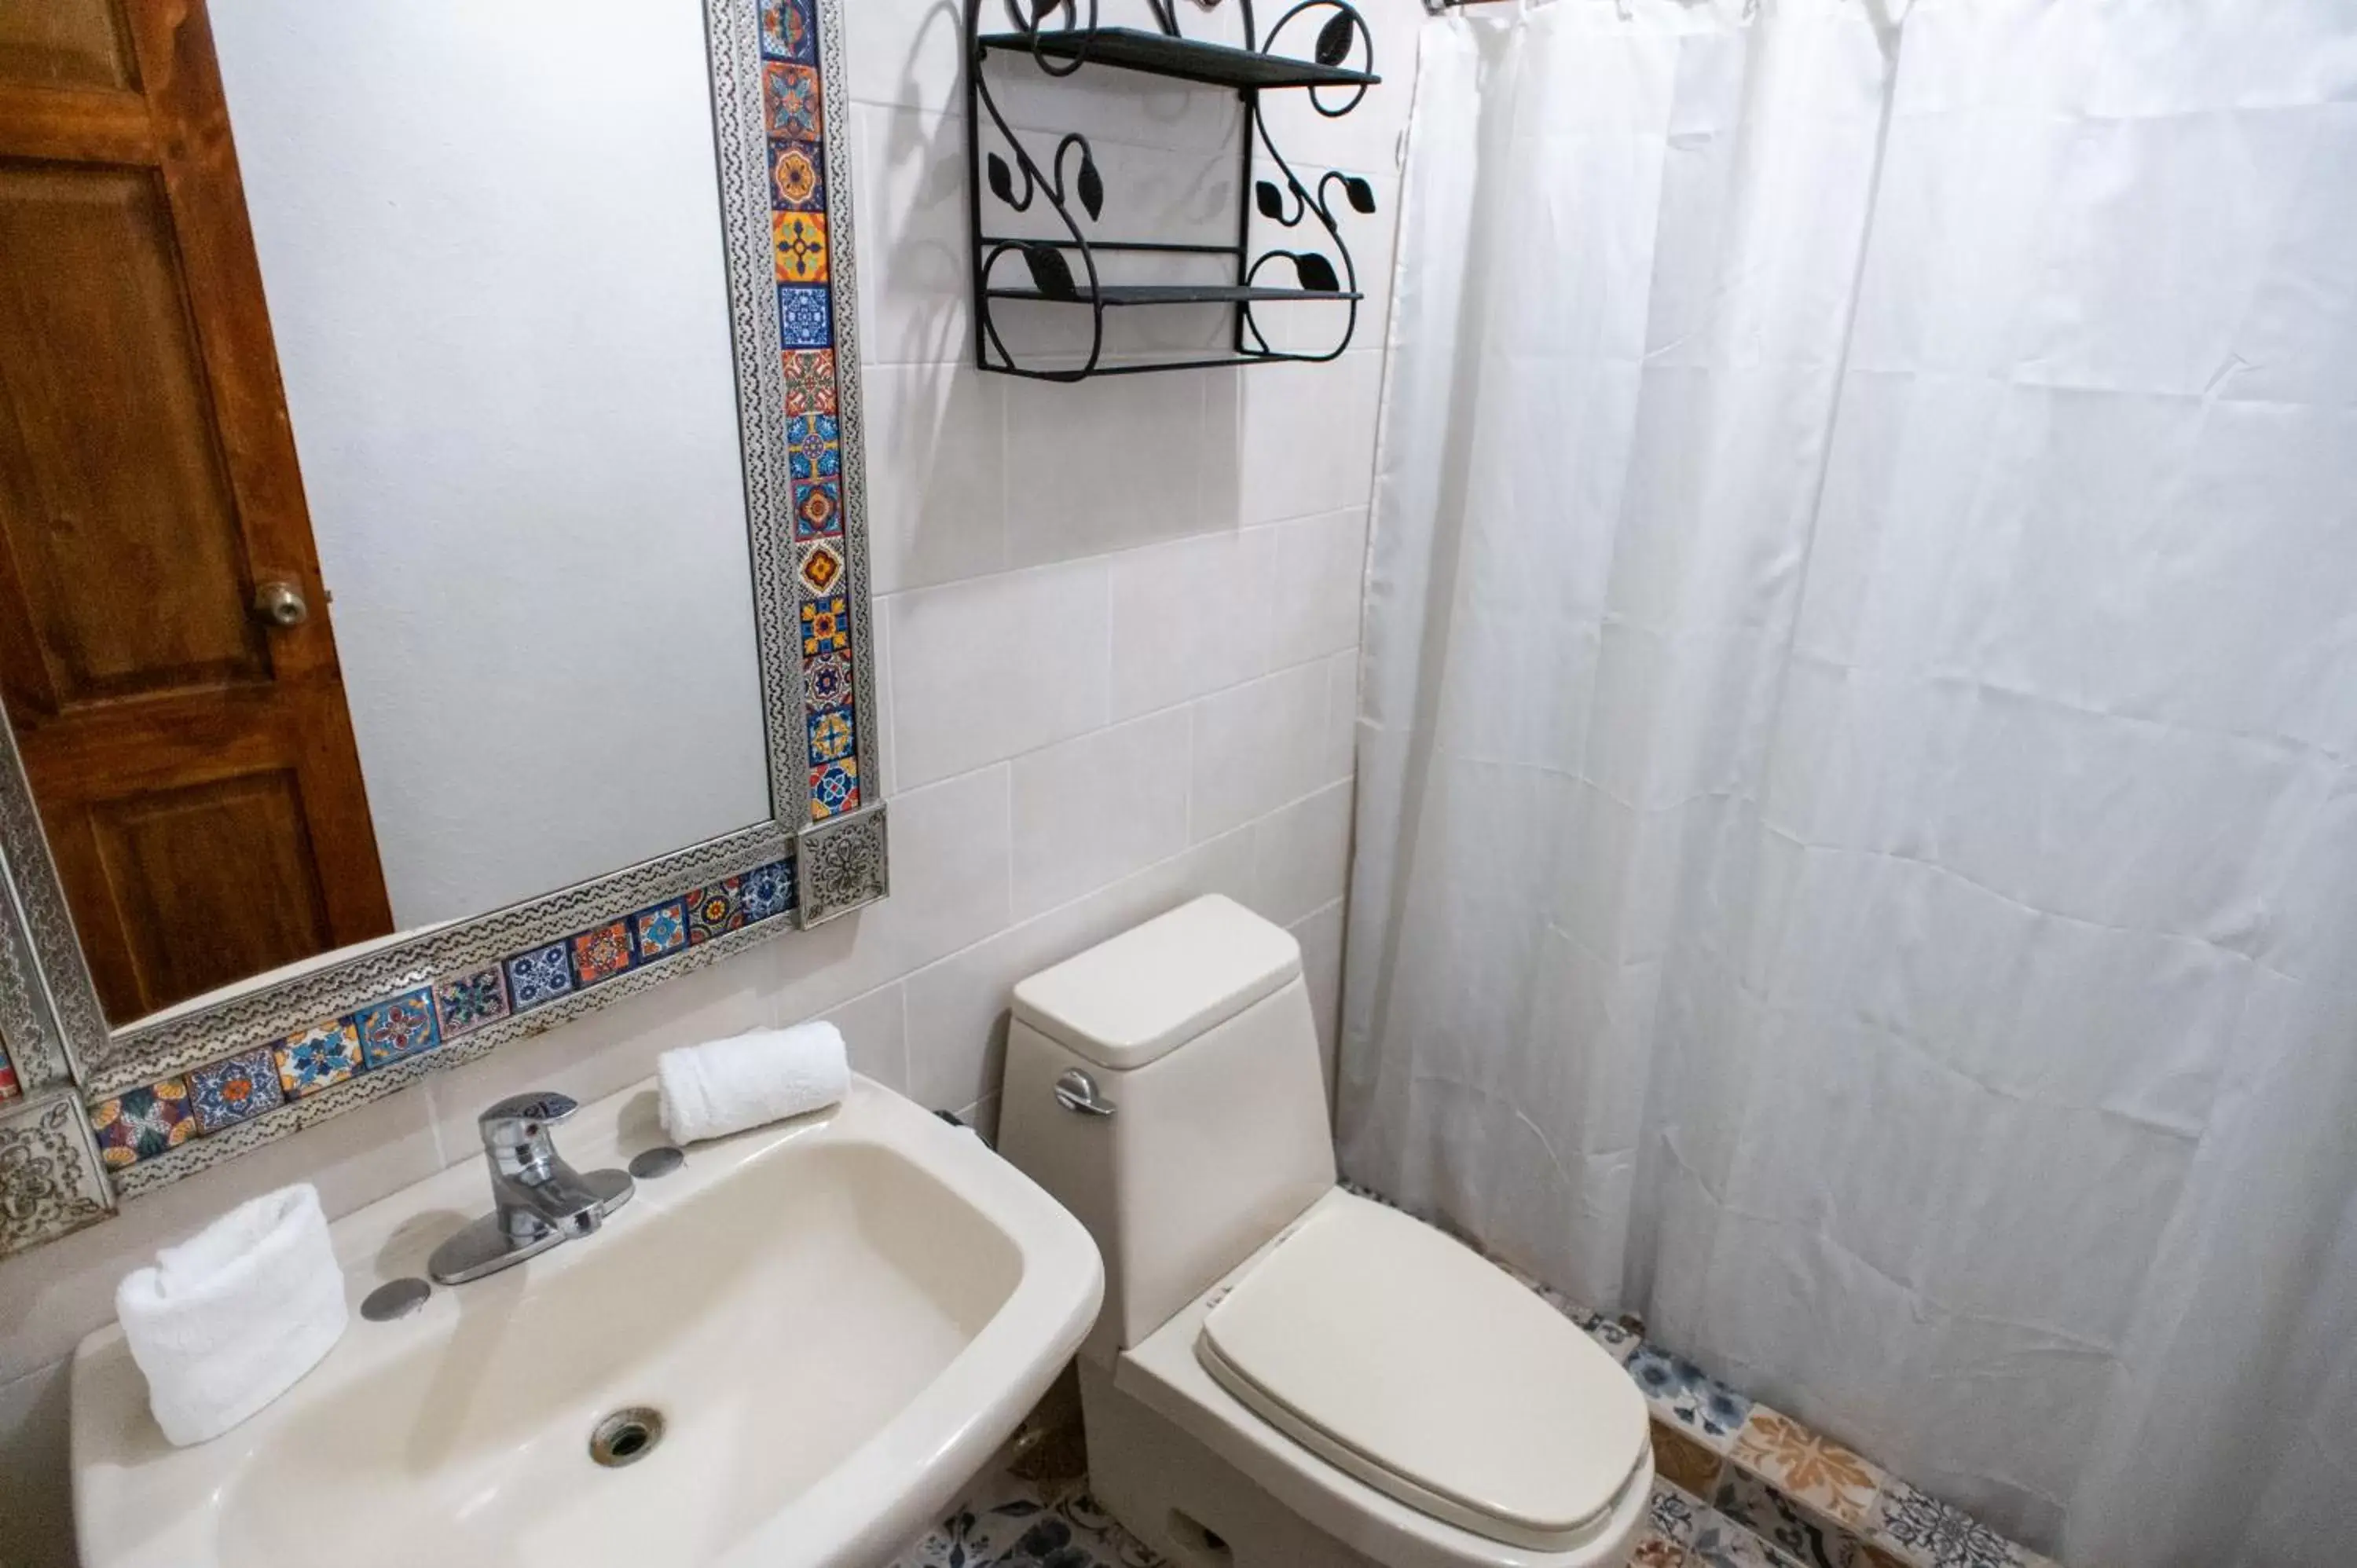 Bathroom in Posada San Miguelito